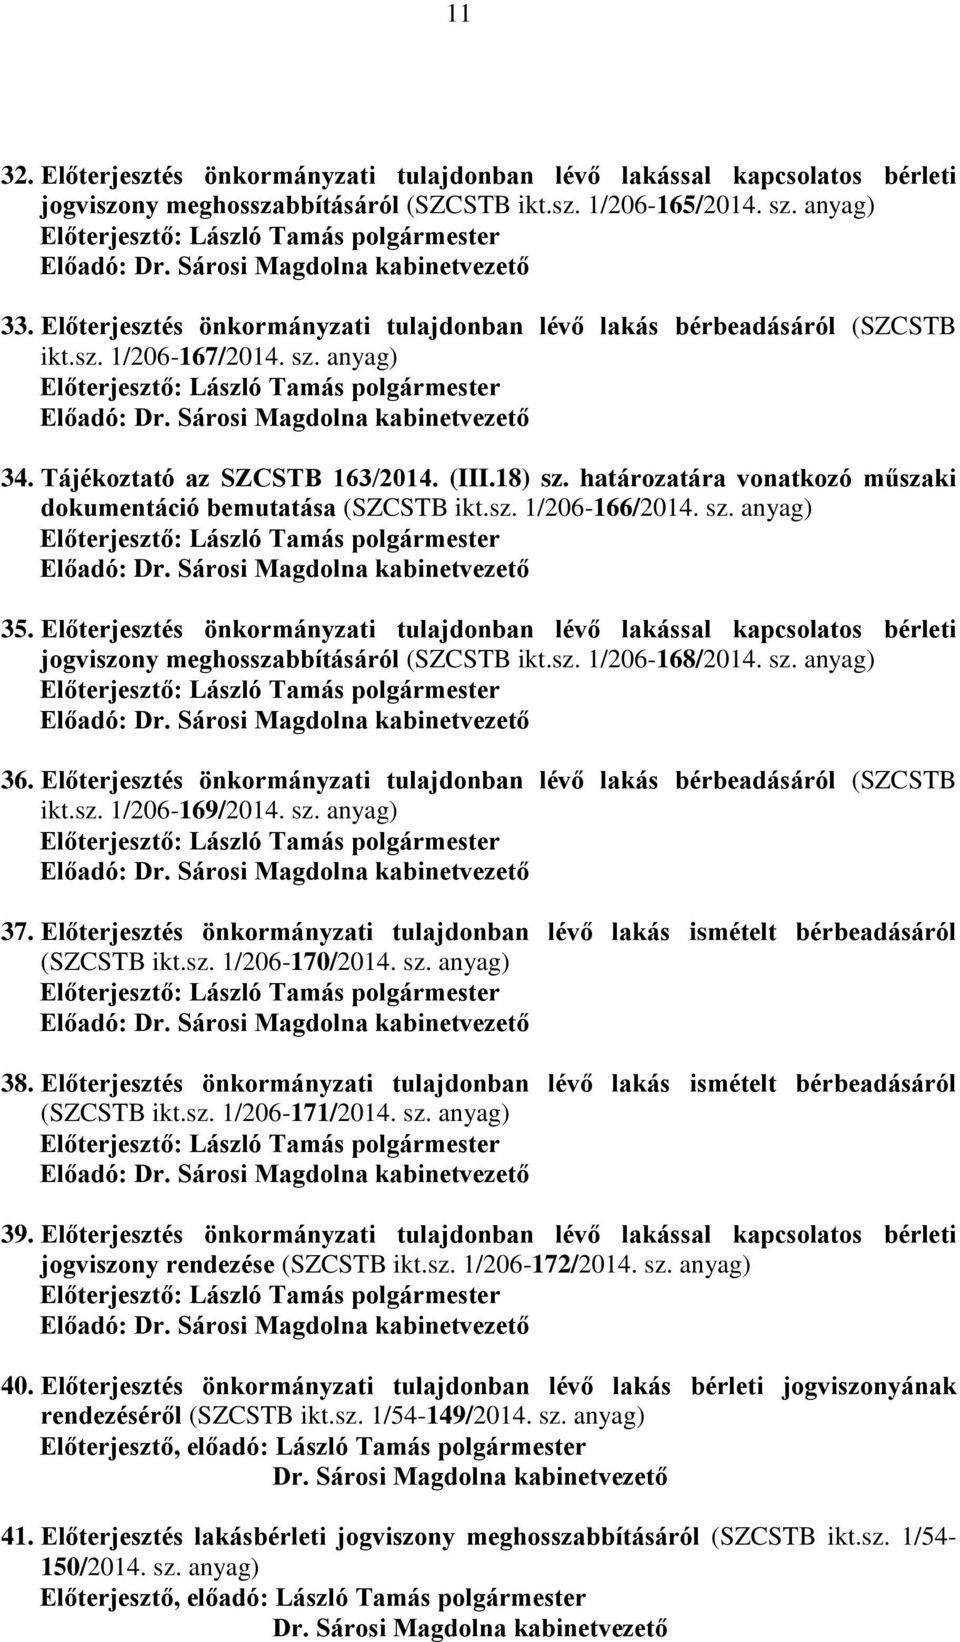 határozatára vonatkozó műszaki dokumentáció bemutatása (SZCSTB ikt.sz. 1/206-166/2014. sz. anyag) 35.